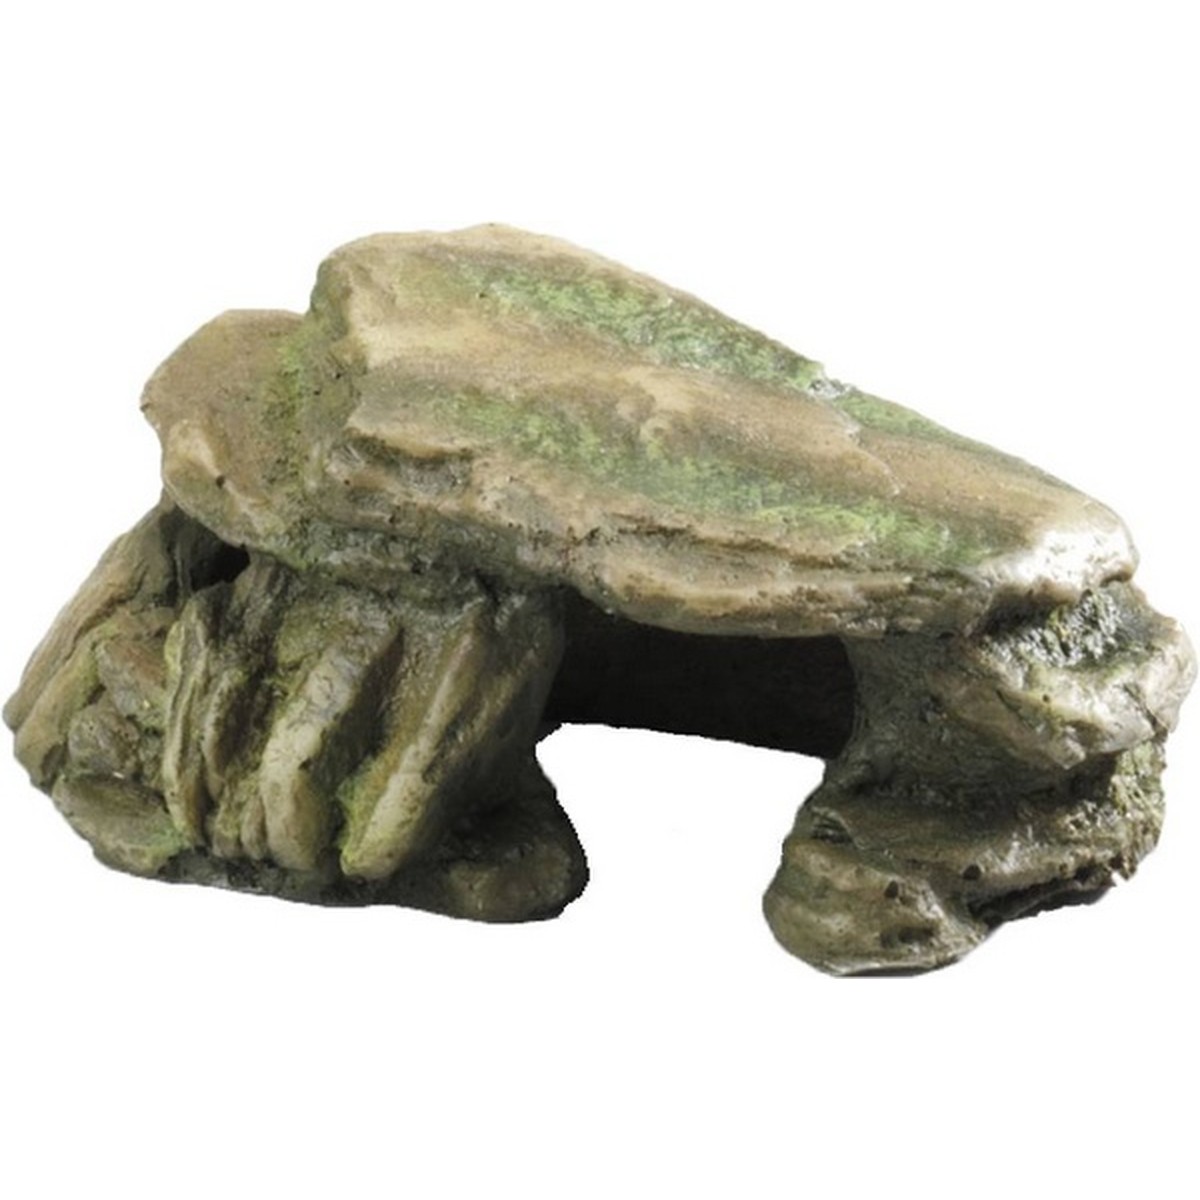   Décor-pierre Rock  S . 15 cm  15cm